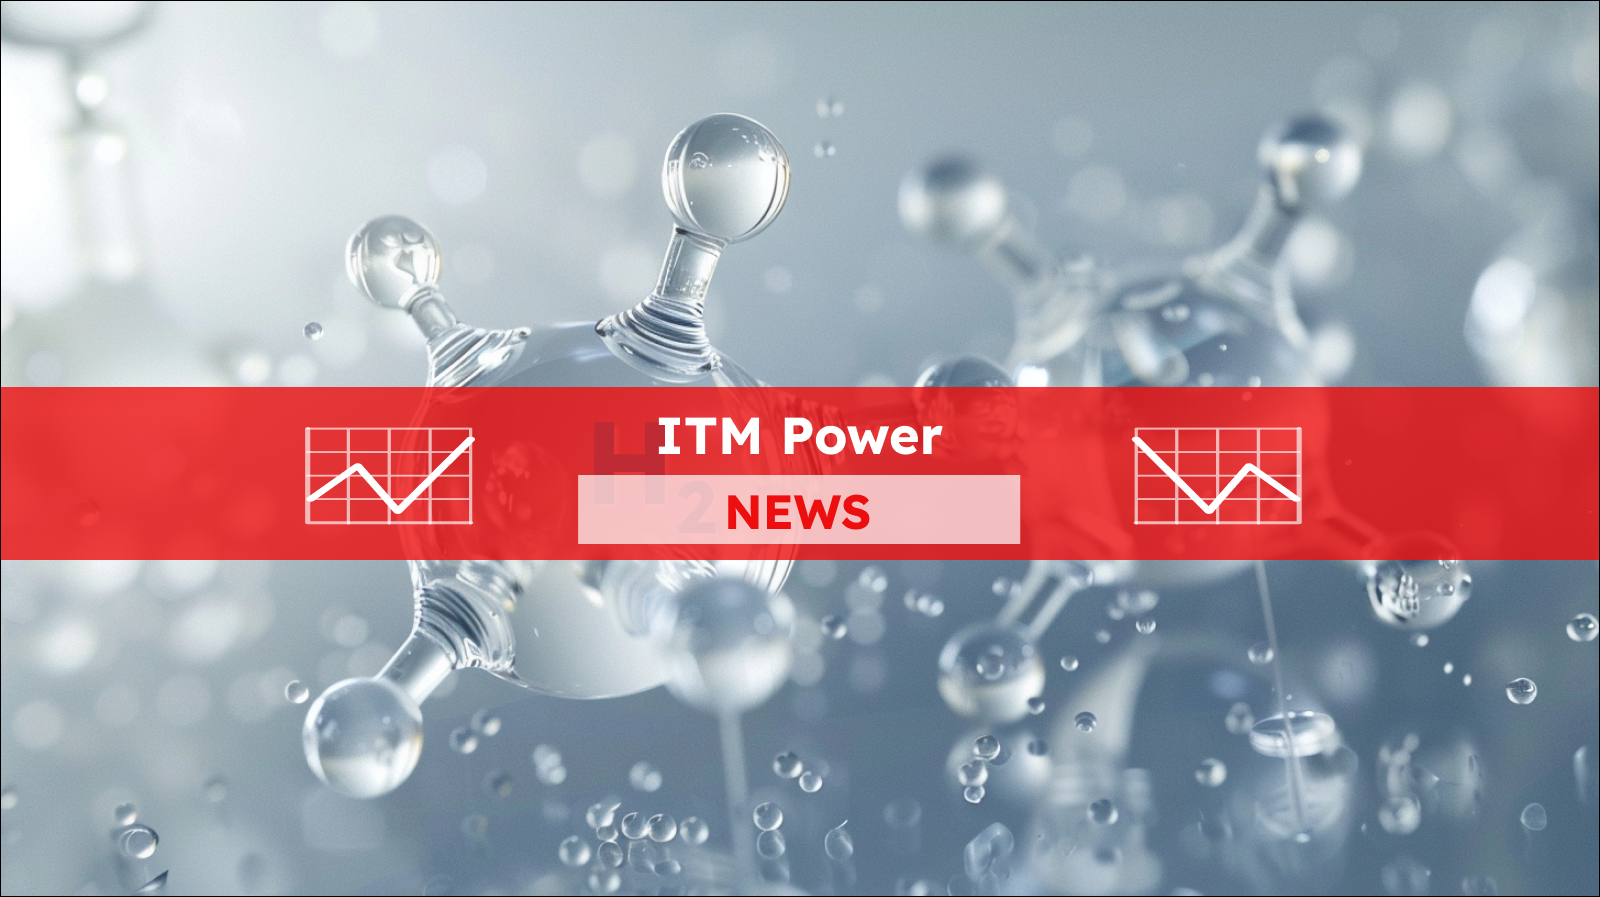 Molekülmodelle von Wasserstoff (H2) umschwebt von kleineren Wasserstoffblasen,  mit einem ITM Power NEWS Banner